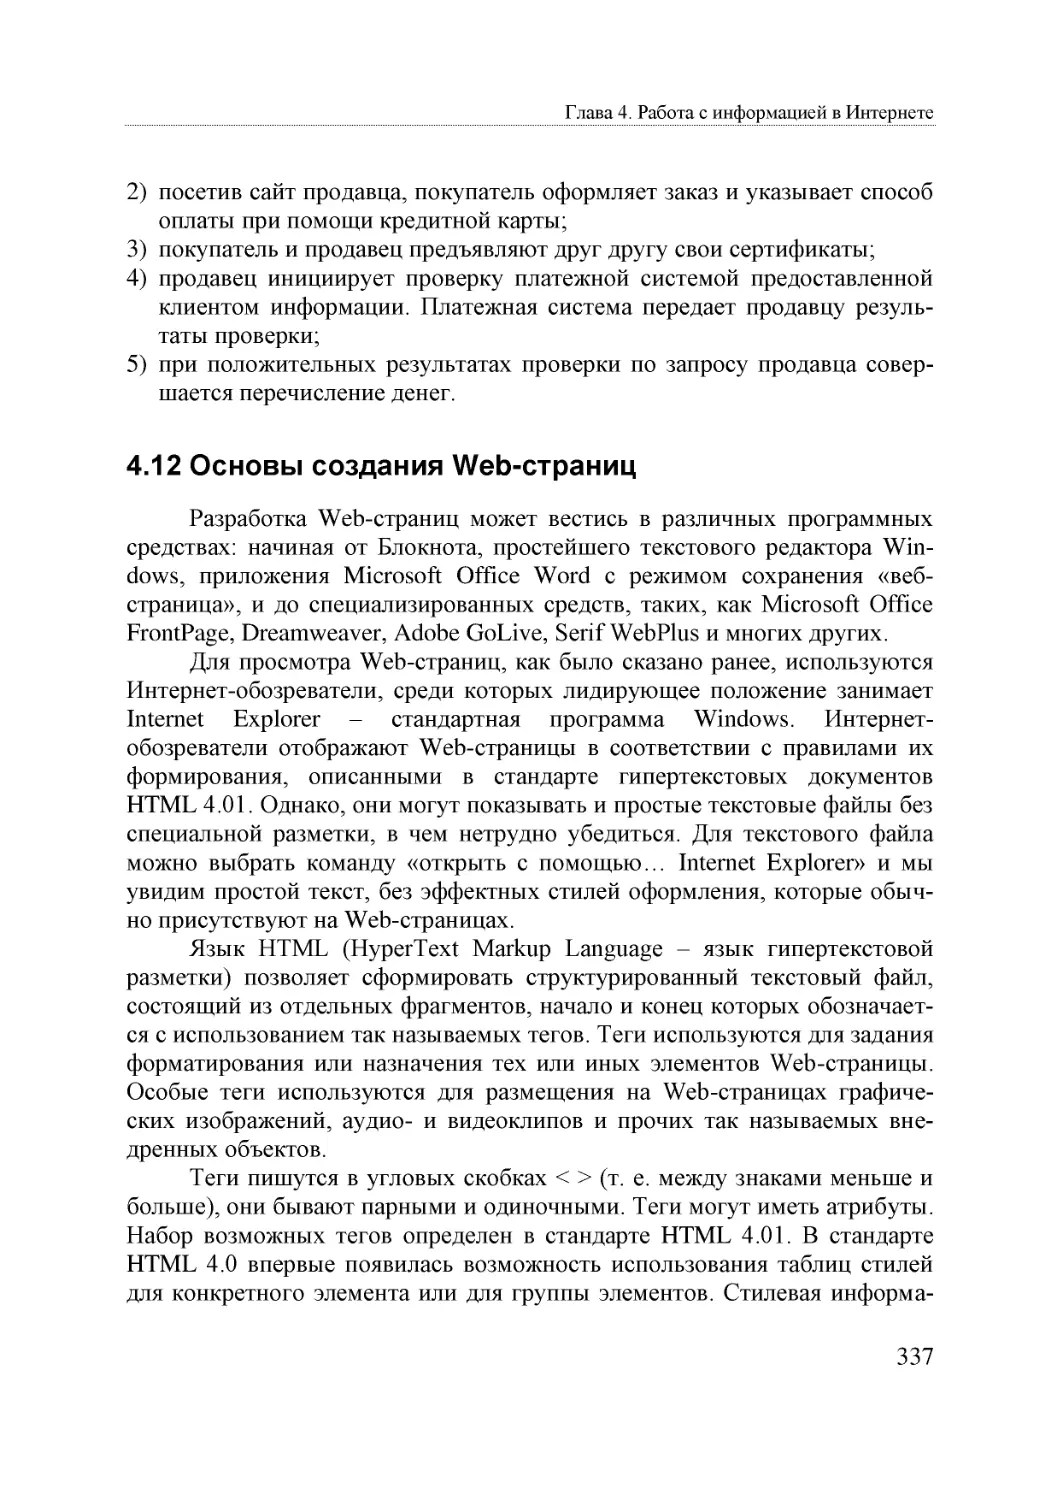 Informatika_Uchebnik_dlya_vuzov_2010 337